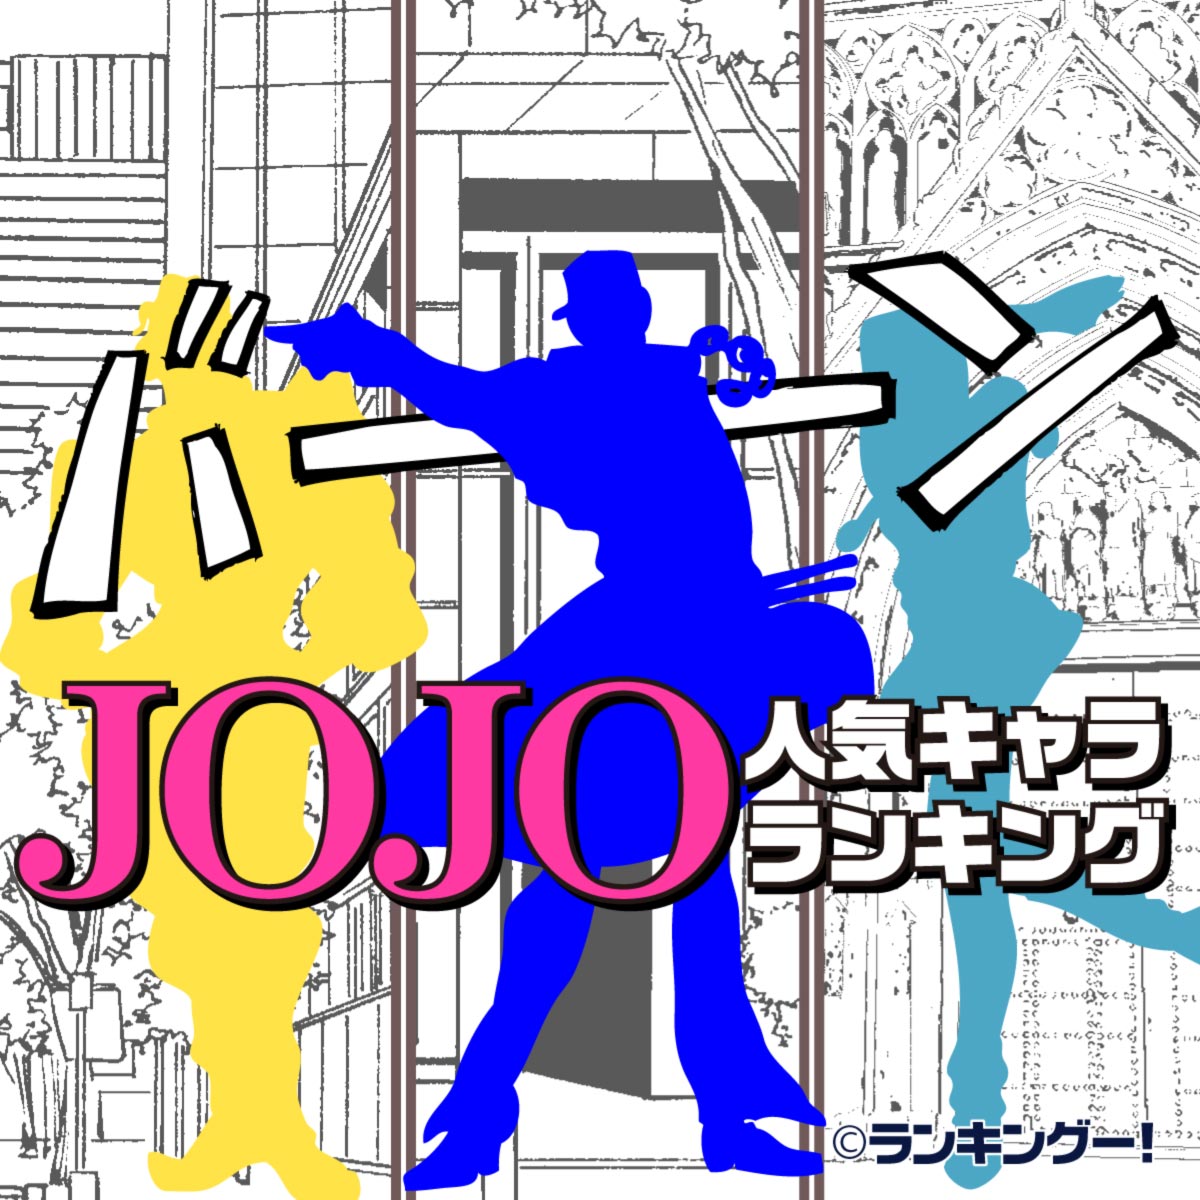 ジョジョ Jojo の奇妙な冒険 人気キャラランキングtop 9 10位 ランキングー